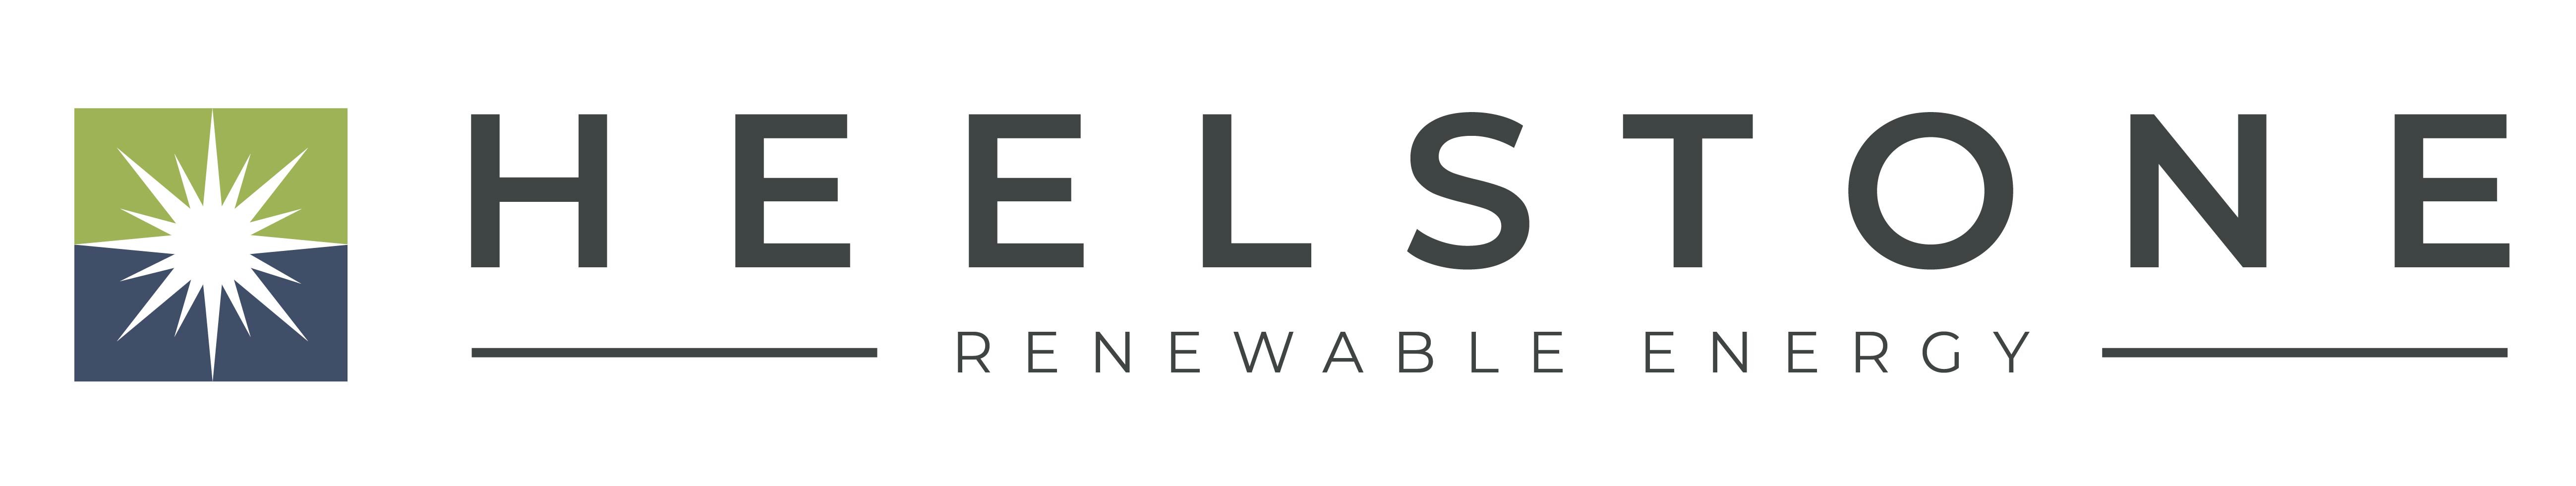 Heelstone Renewable Energy Logo